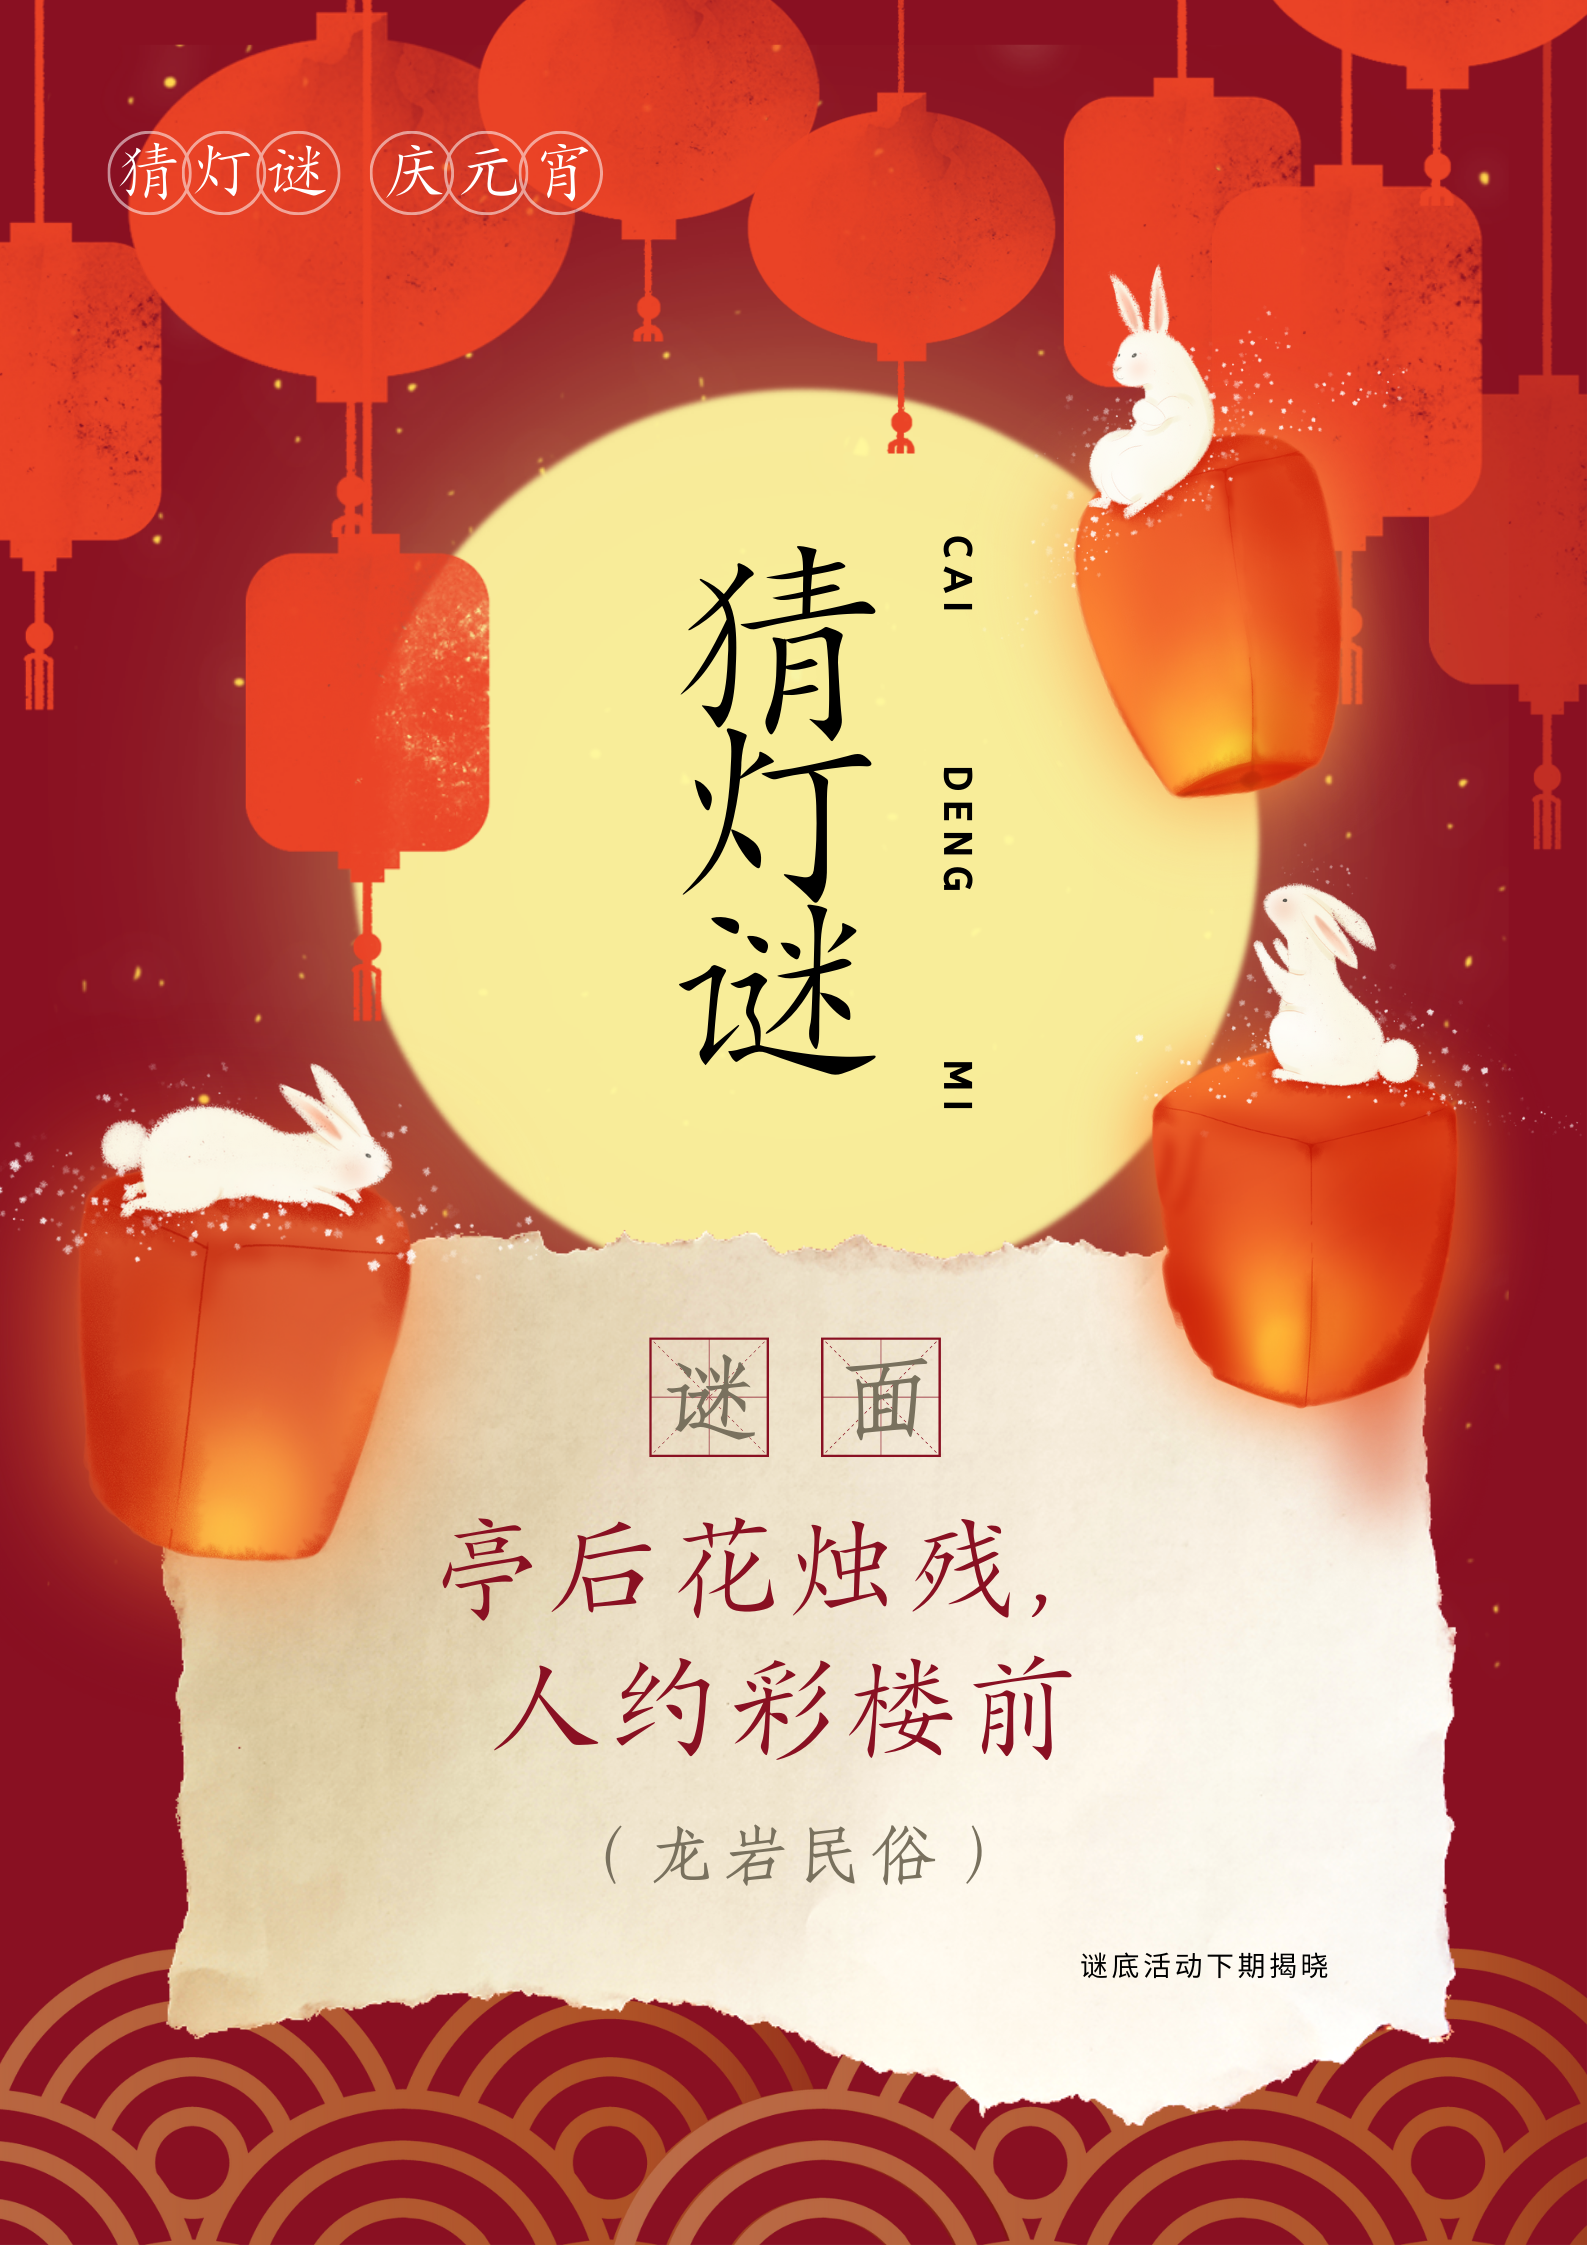 红黄色圆月灯笼创意中秋节海报 (9).png